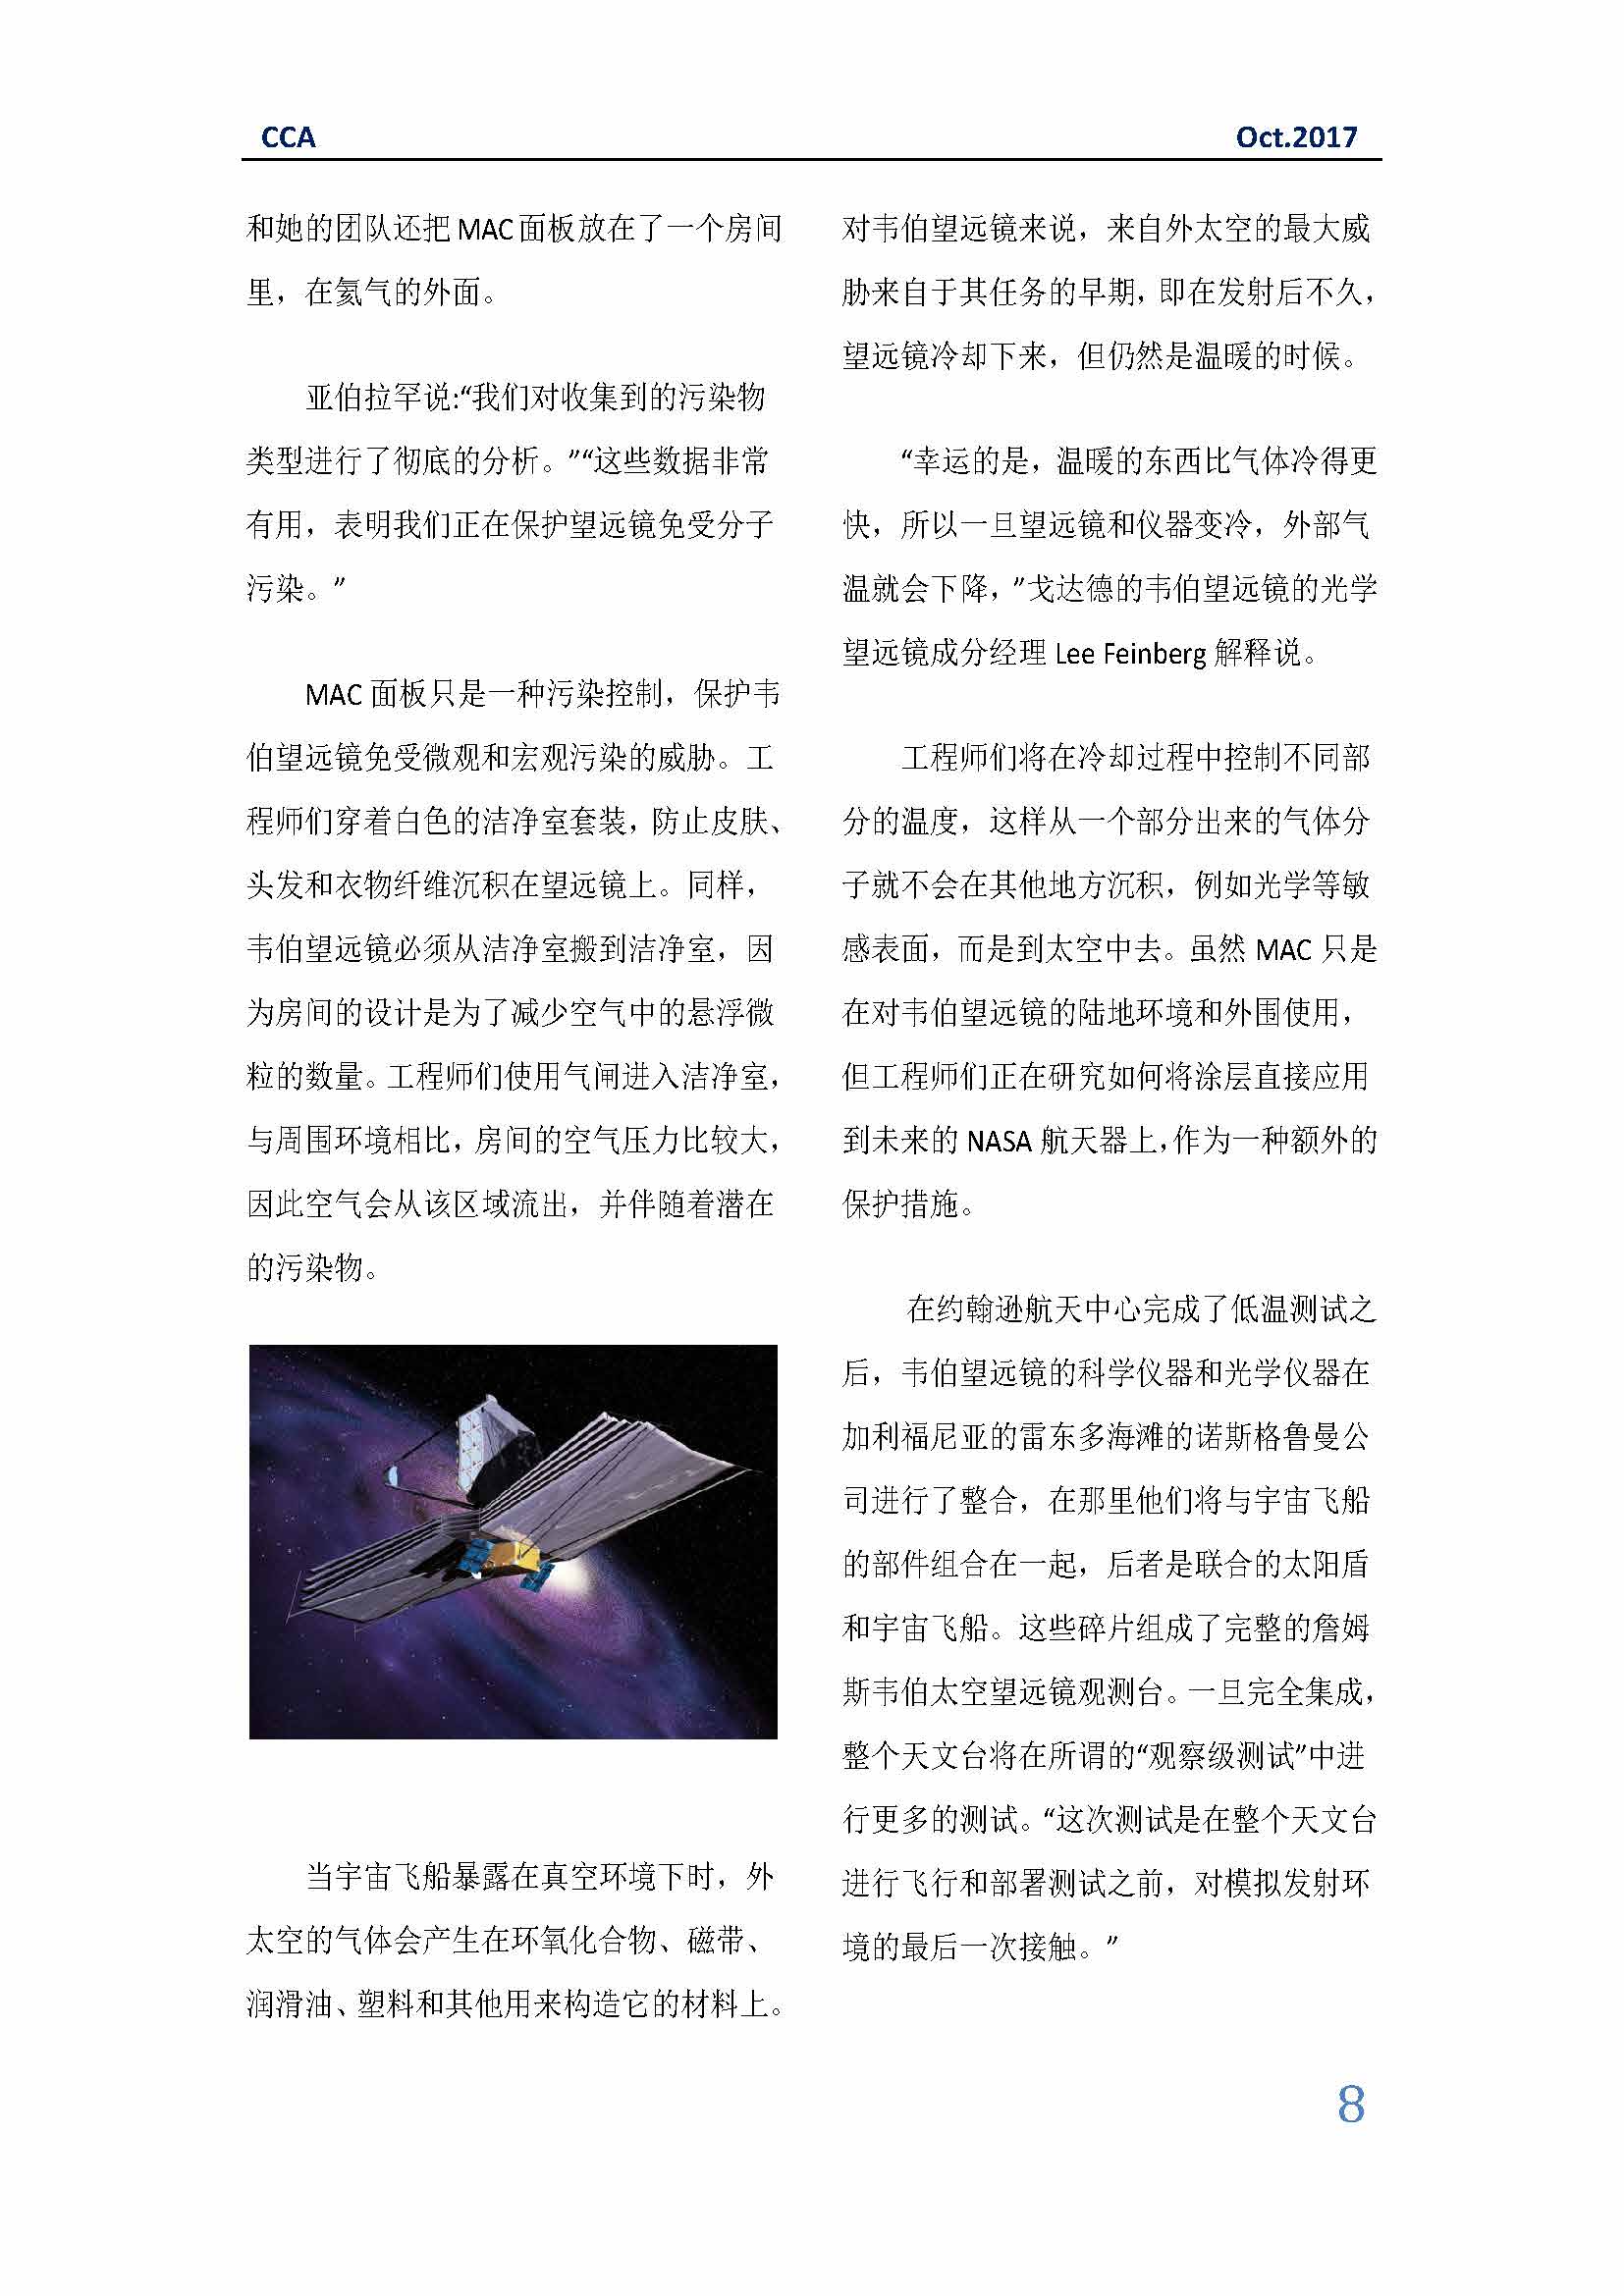 中国科技咨询协会国际快讯（第三十期）_页面_08.jpg